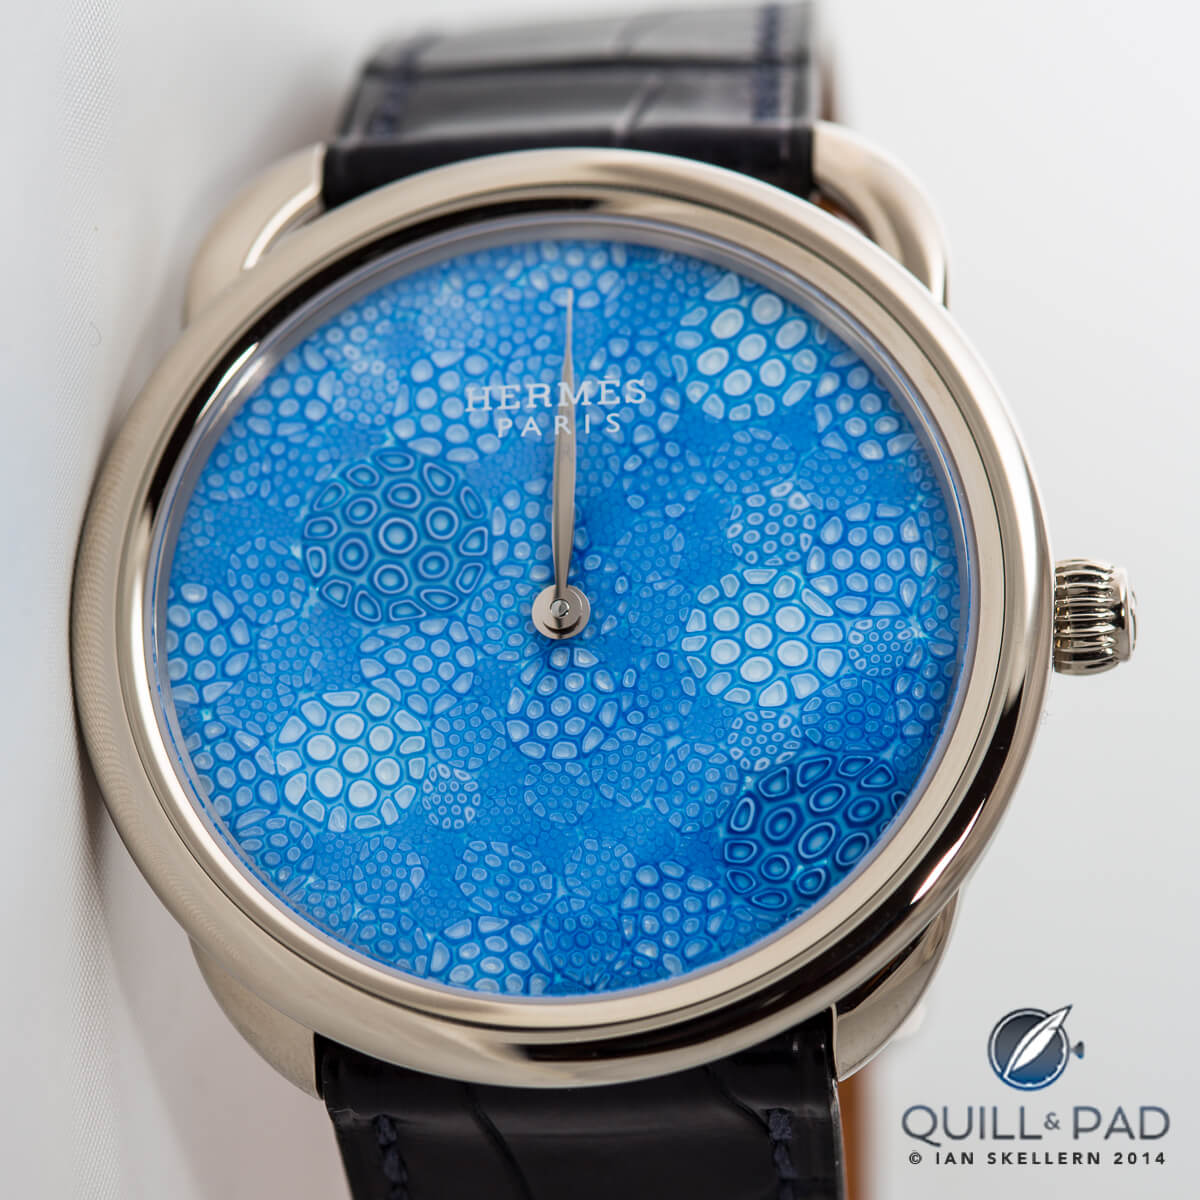 Hermès Arceau Millefiori with artisanal crystal dial by Cristalleries Royales de Saint-Louis